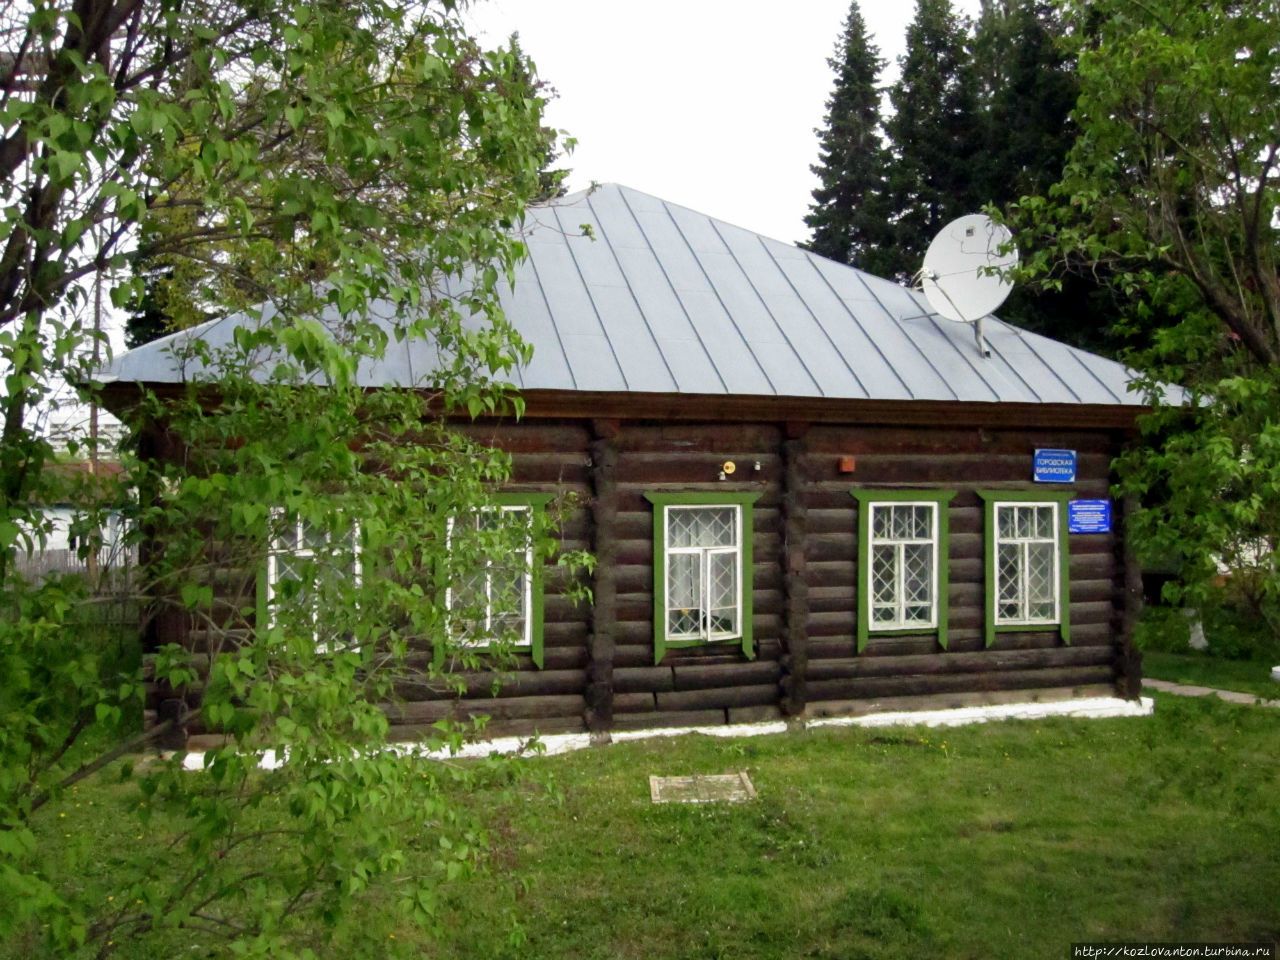 Городская библиотека. Белокуриха, Россия